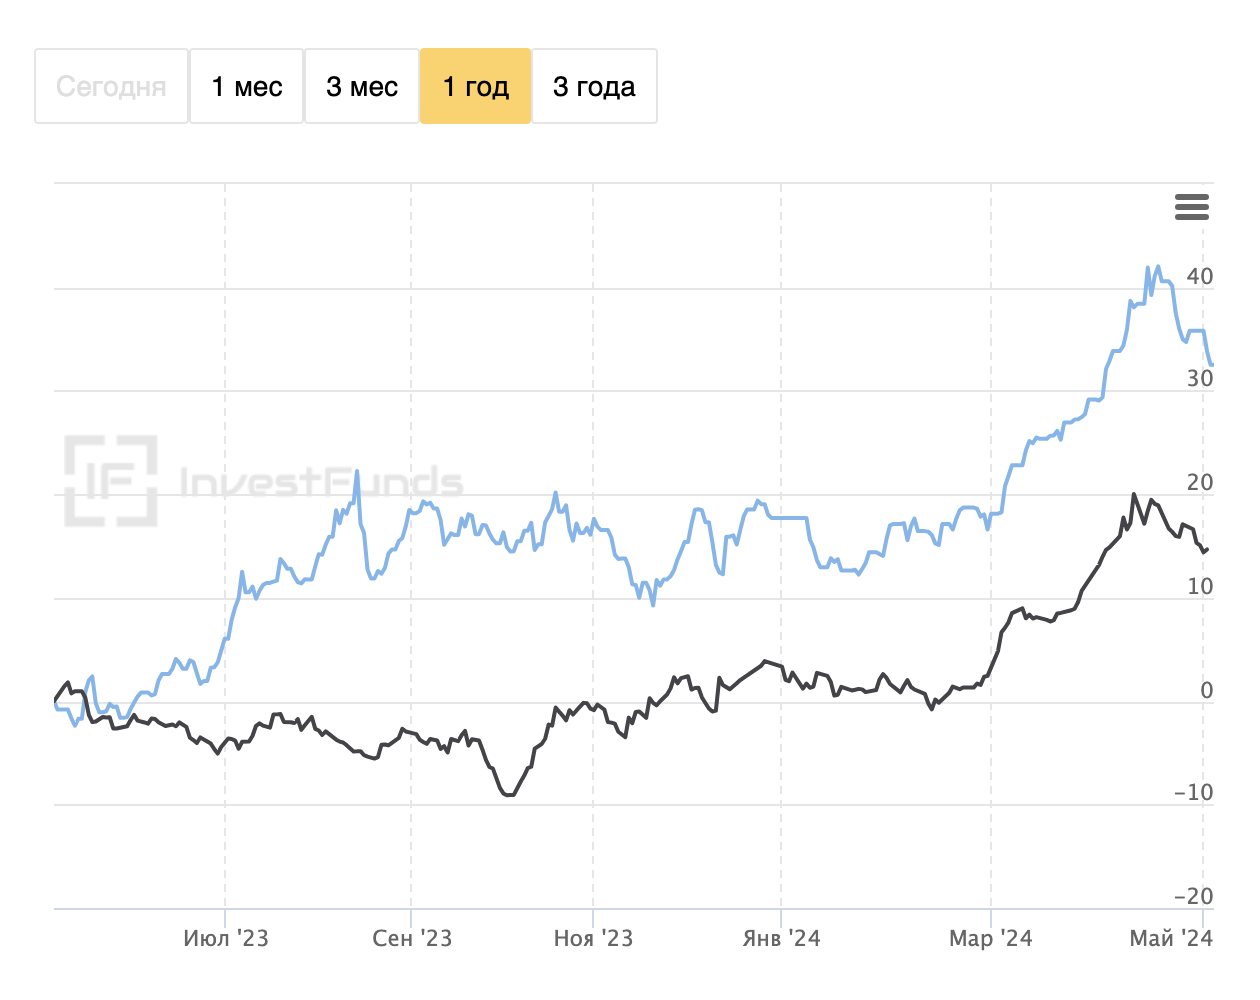 Сравнение графиков цен на золото: цены в рублях растут (синий график цены ЦБ), а долларах снижаются (черный график цены LBMA). Значит, в этот момент вложения в ОМС росли не потому, что дорожало золото, а из⁠-⁠за девальвации рубля